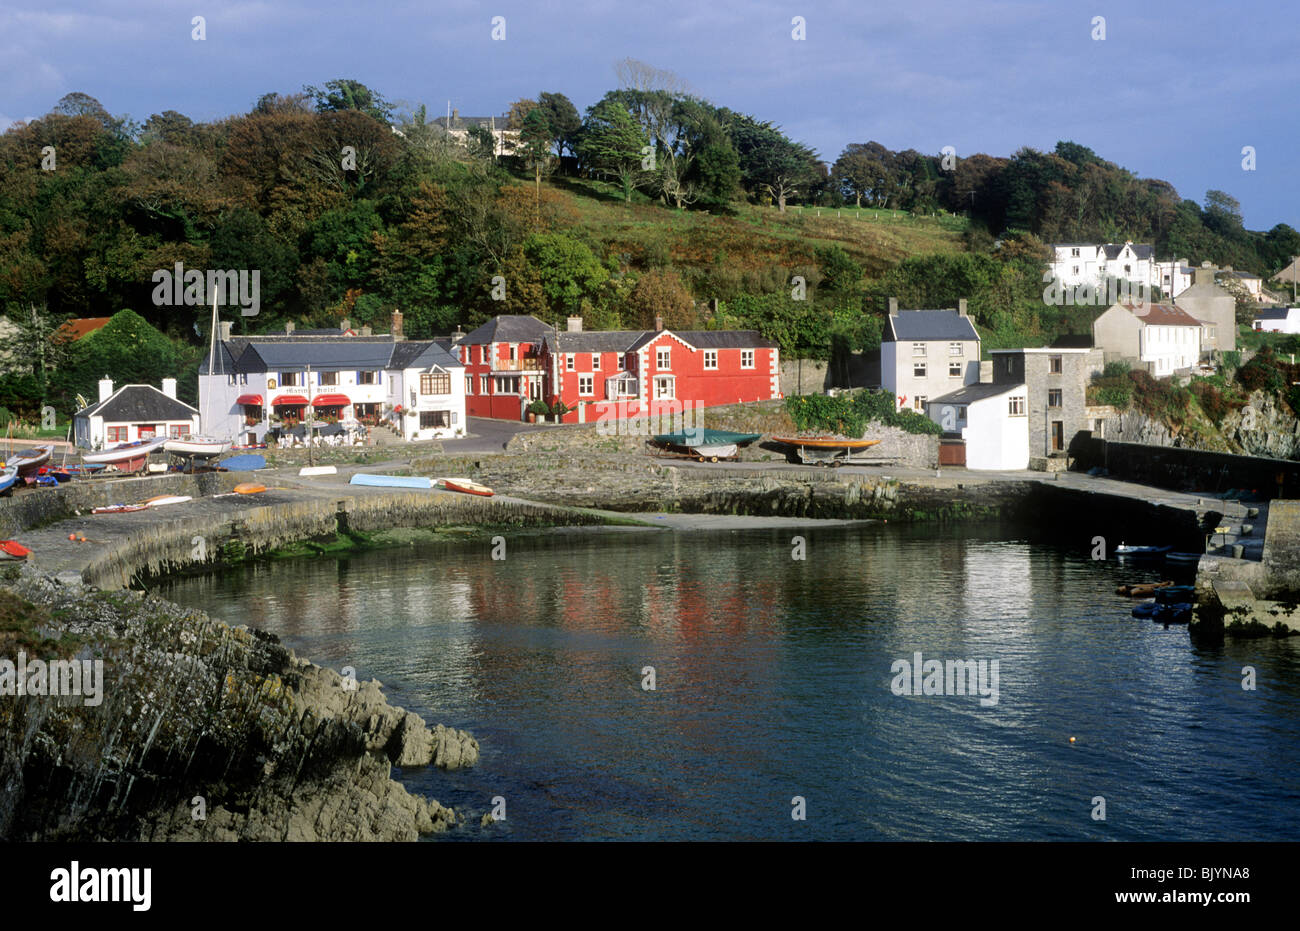 Glandore, County Cork, Irland-Eire irischer Küstenfischerei Dörfer Landschaft Landschaft Blick Dorfansichten malerische Häuser auf dem Land Stockfoto